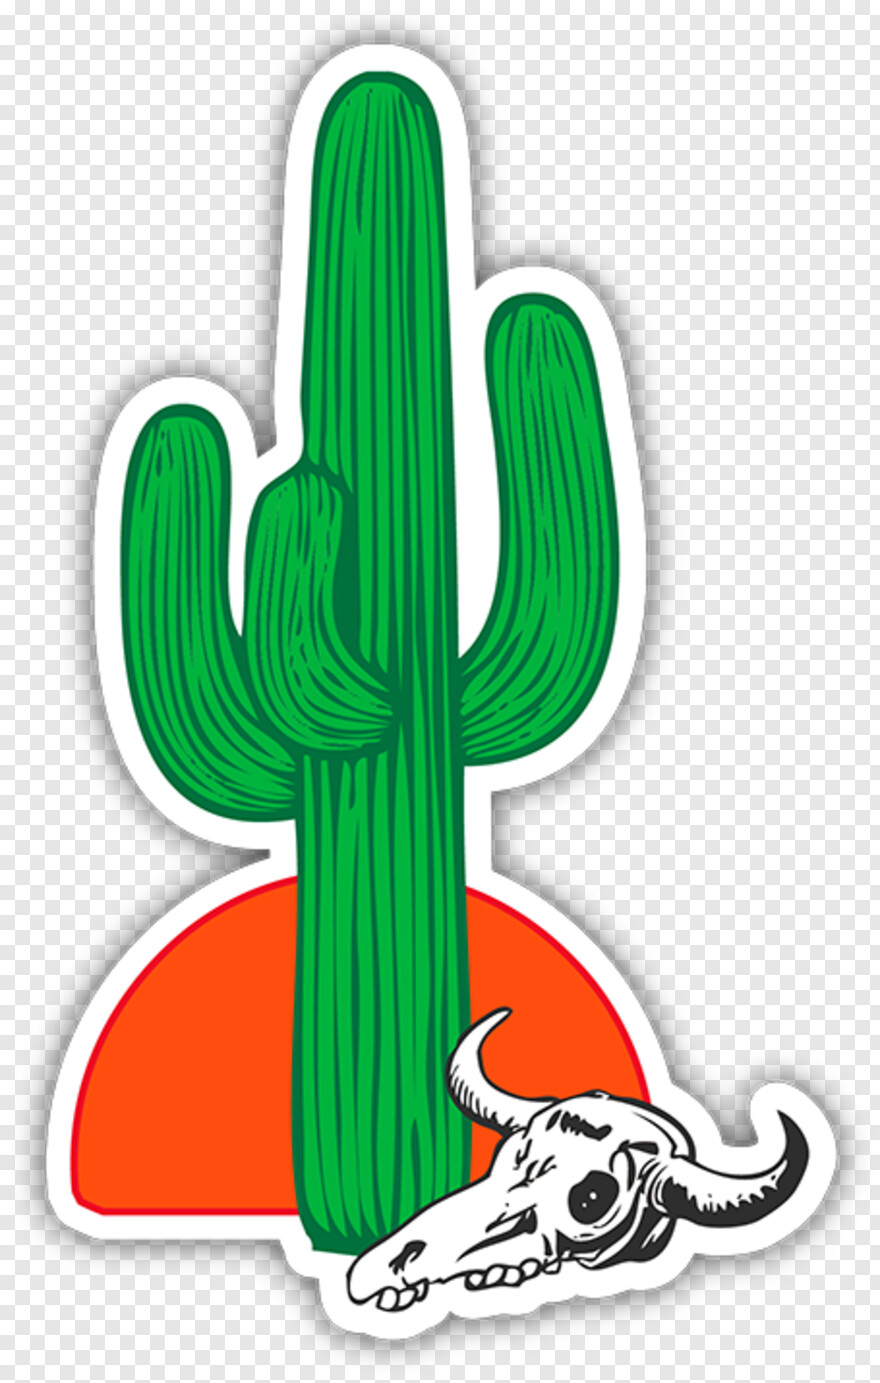 cactus-silhouette # 1101357